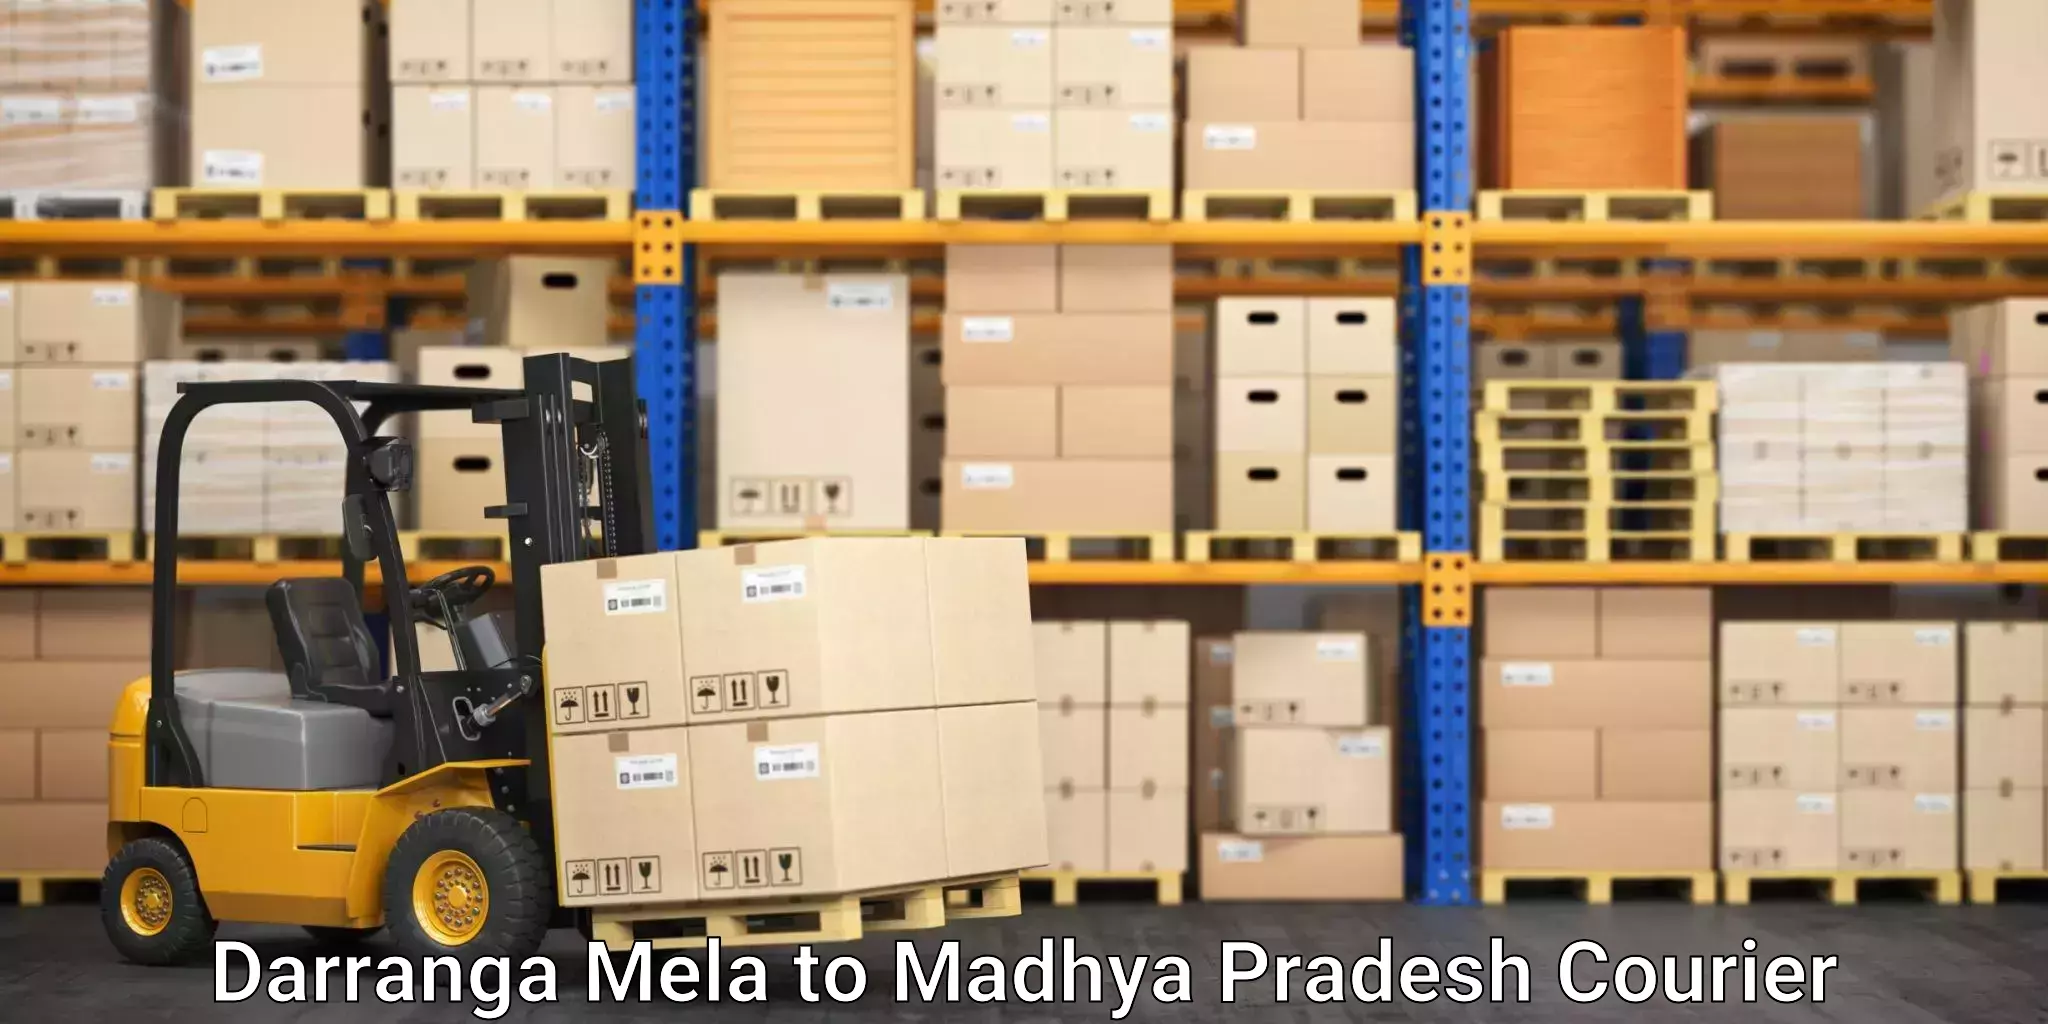 Express logistics providers Darranga Mela to Madwas